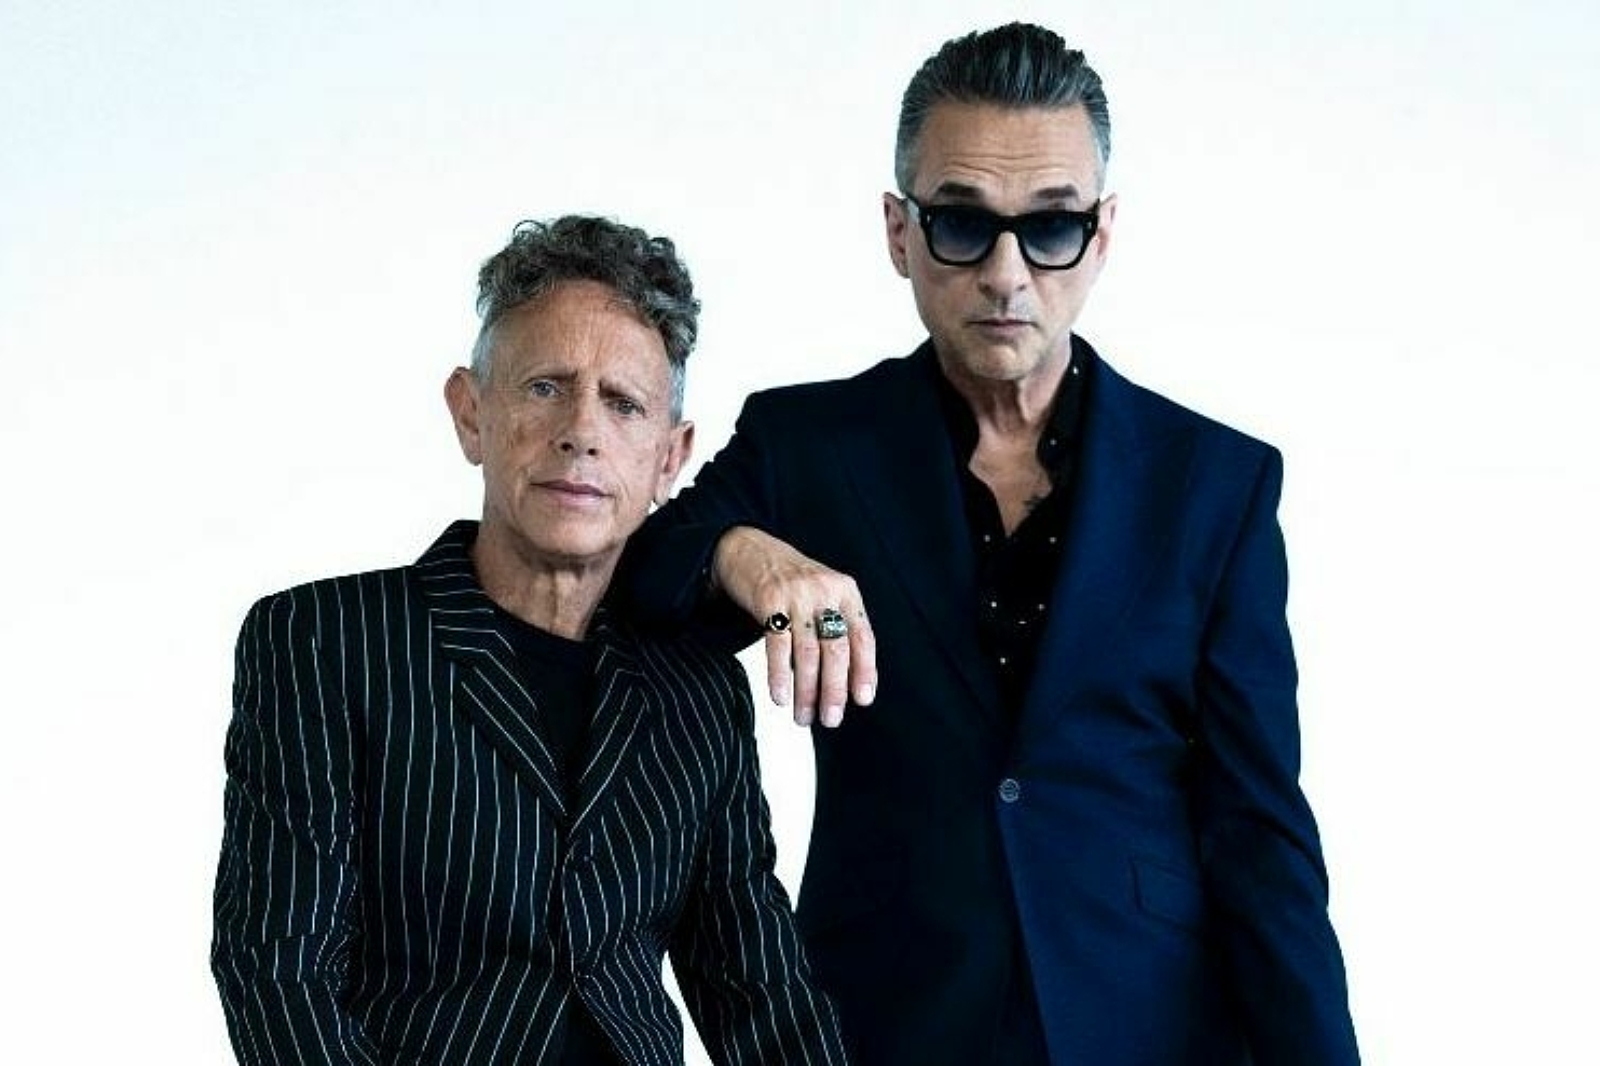 Depeche Mode announce new album 'Memento Mori'